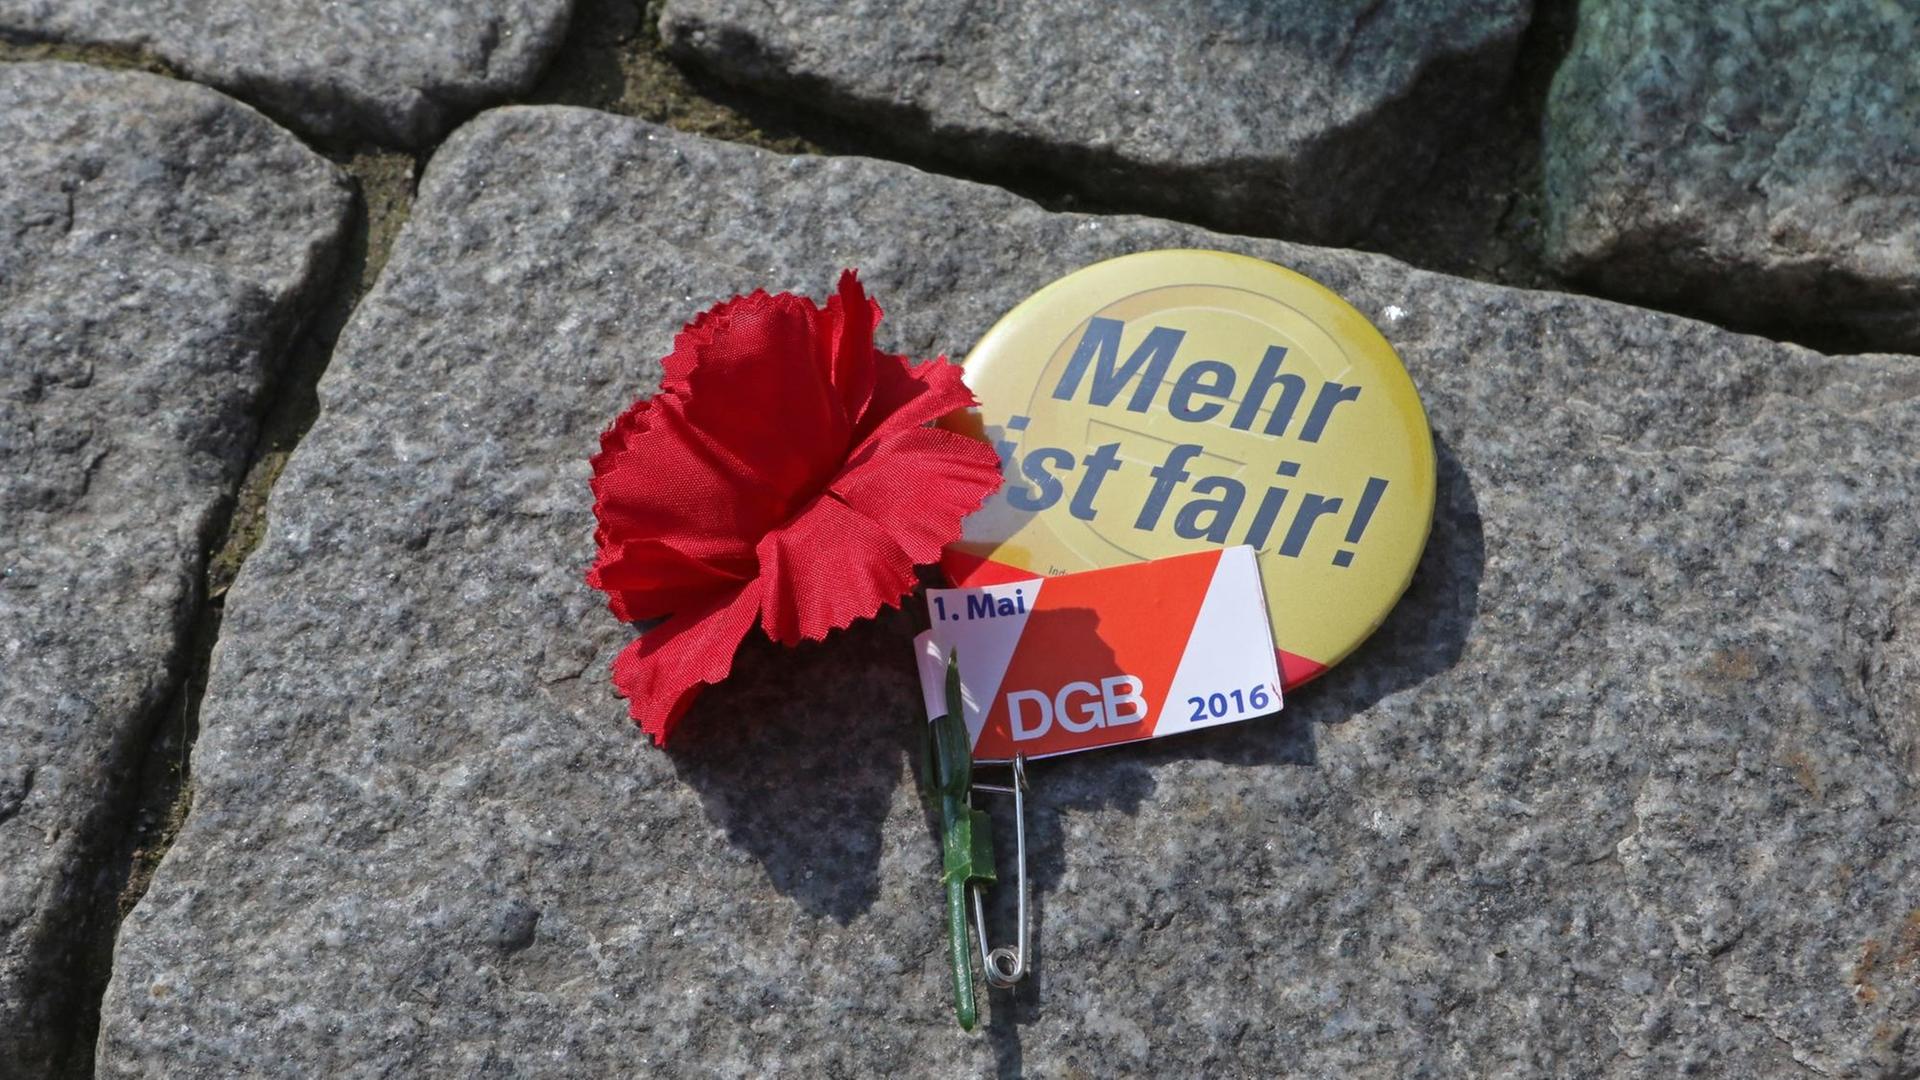 ILLUSTRATION - Ein Anstecker des Deutschen Gewerkschaftsbundes DGB mit einer Mai-Nelke und ein Sticker mit der Aufschrift "Mehr ist fair!" liegen am 01.05.2016 während einer DGB-Kundgebung auf dem Straßenpflaster des Marktplatzes in Wernigerode (Sachsen-Anhalt).